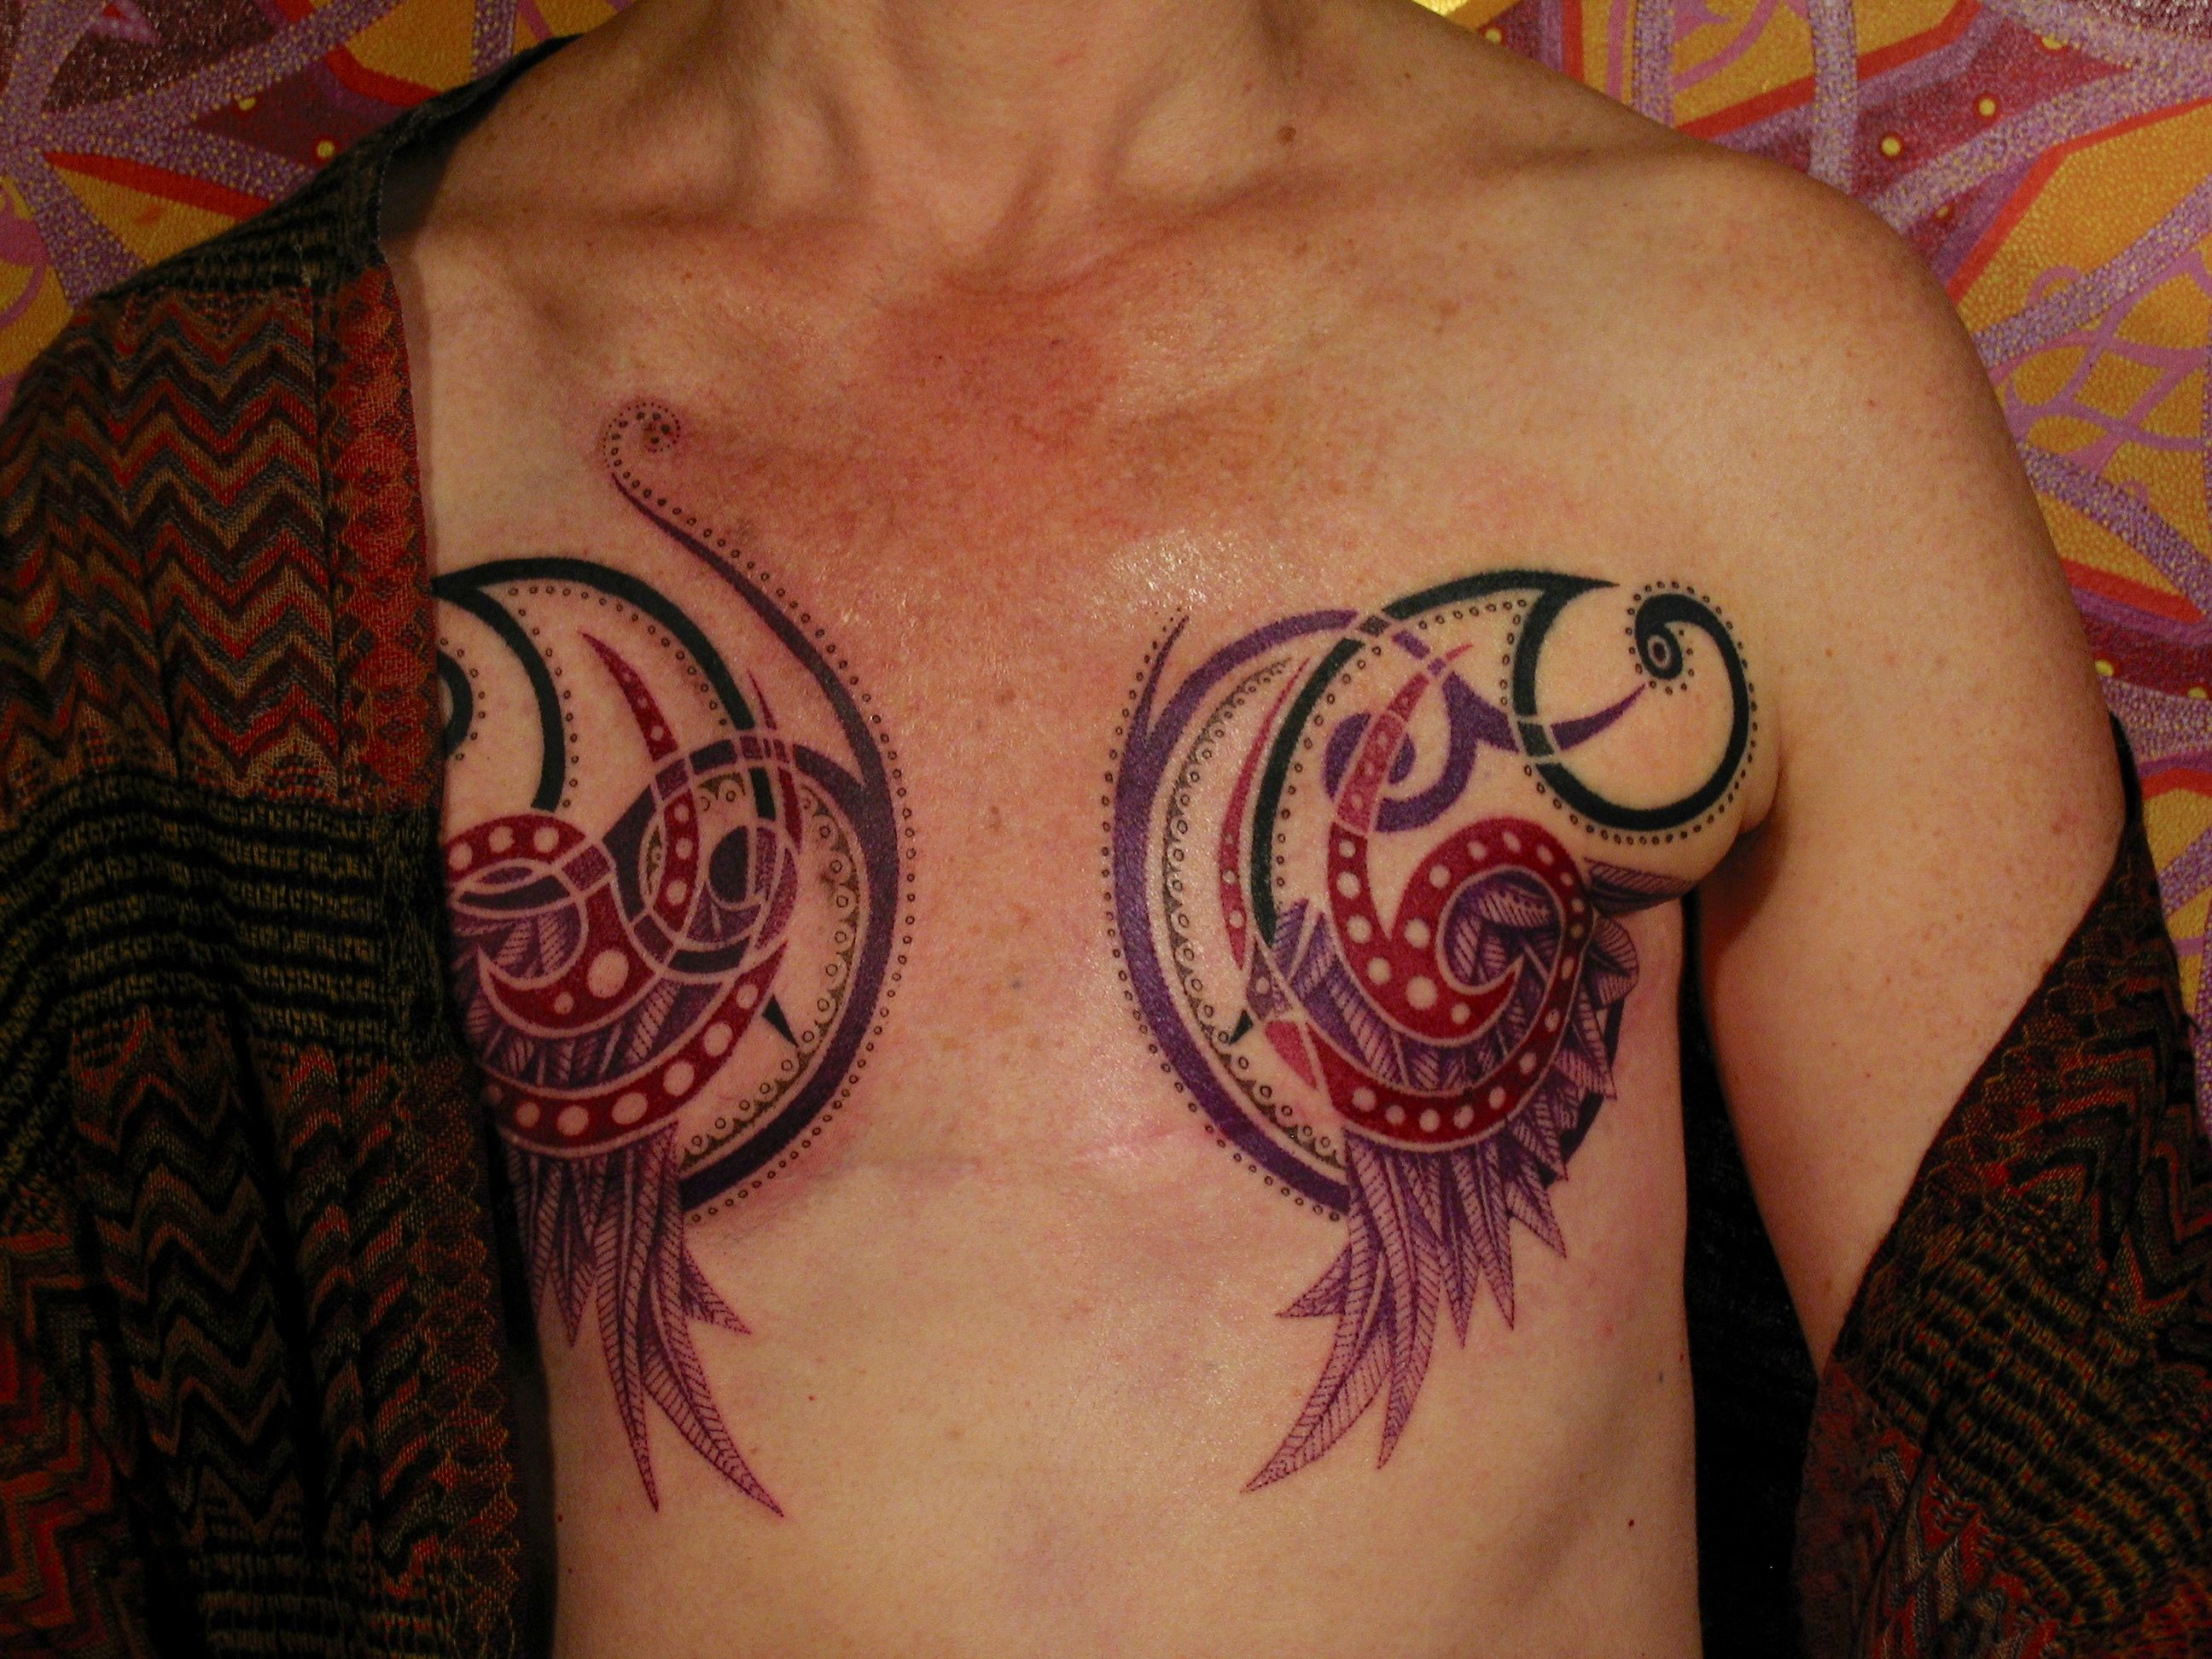 Tattoo uploaded by Shane Wallin • Mastectomy tattoo by Shane Wallin  #ShaneWallin #mastectomytattoos #mastectomy #mastectomyscarcoverup  #scarcoveruptattoo • Tattoodo